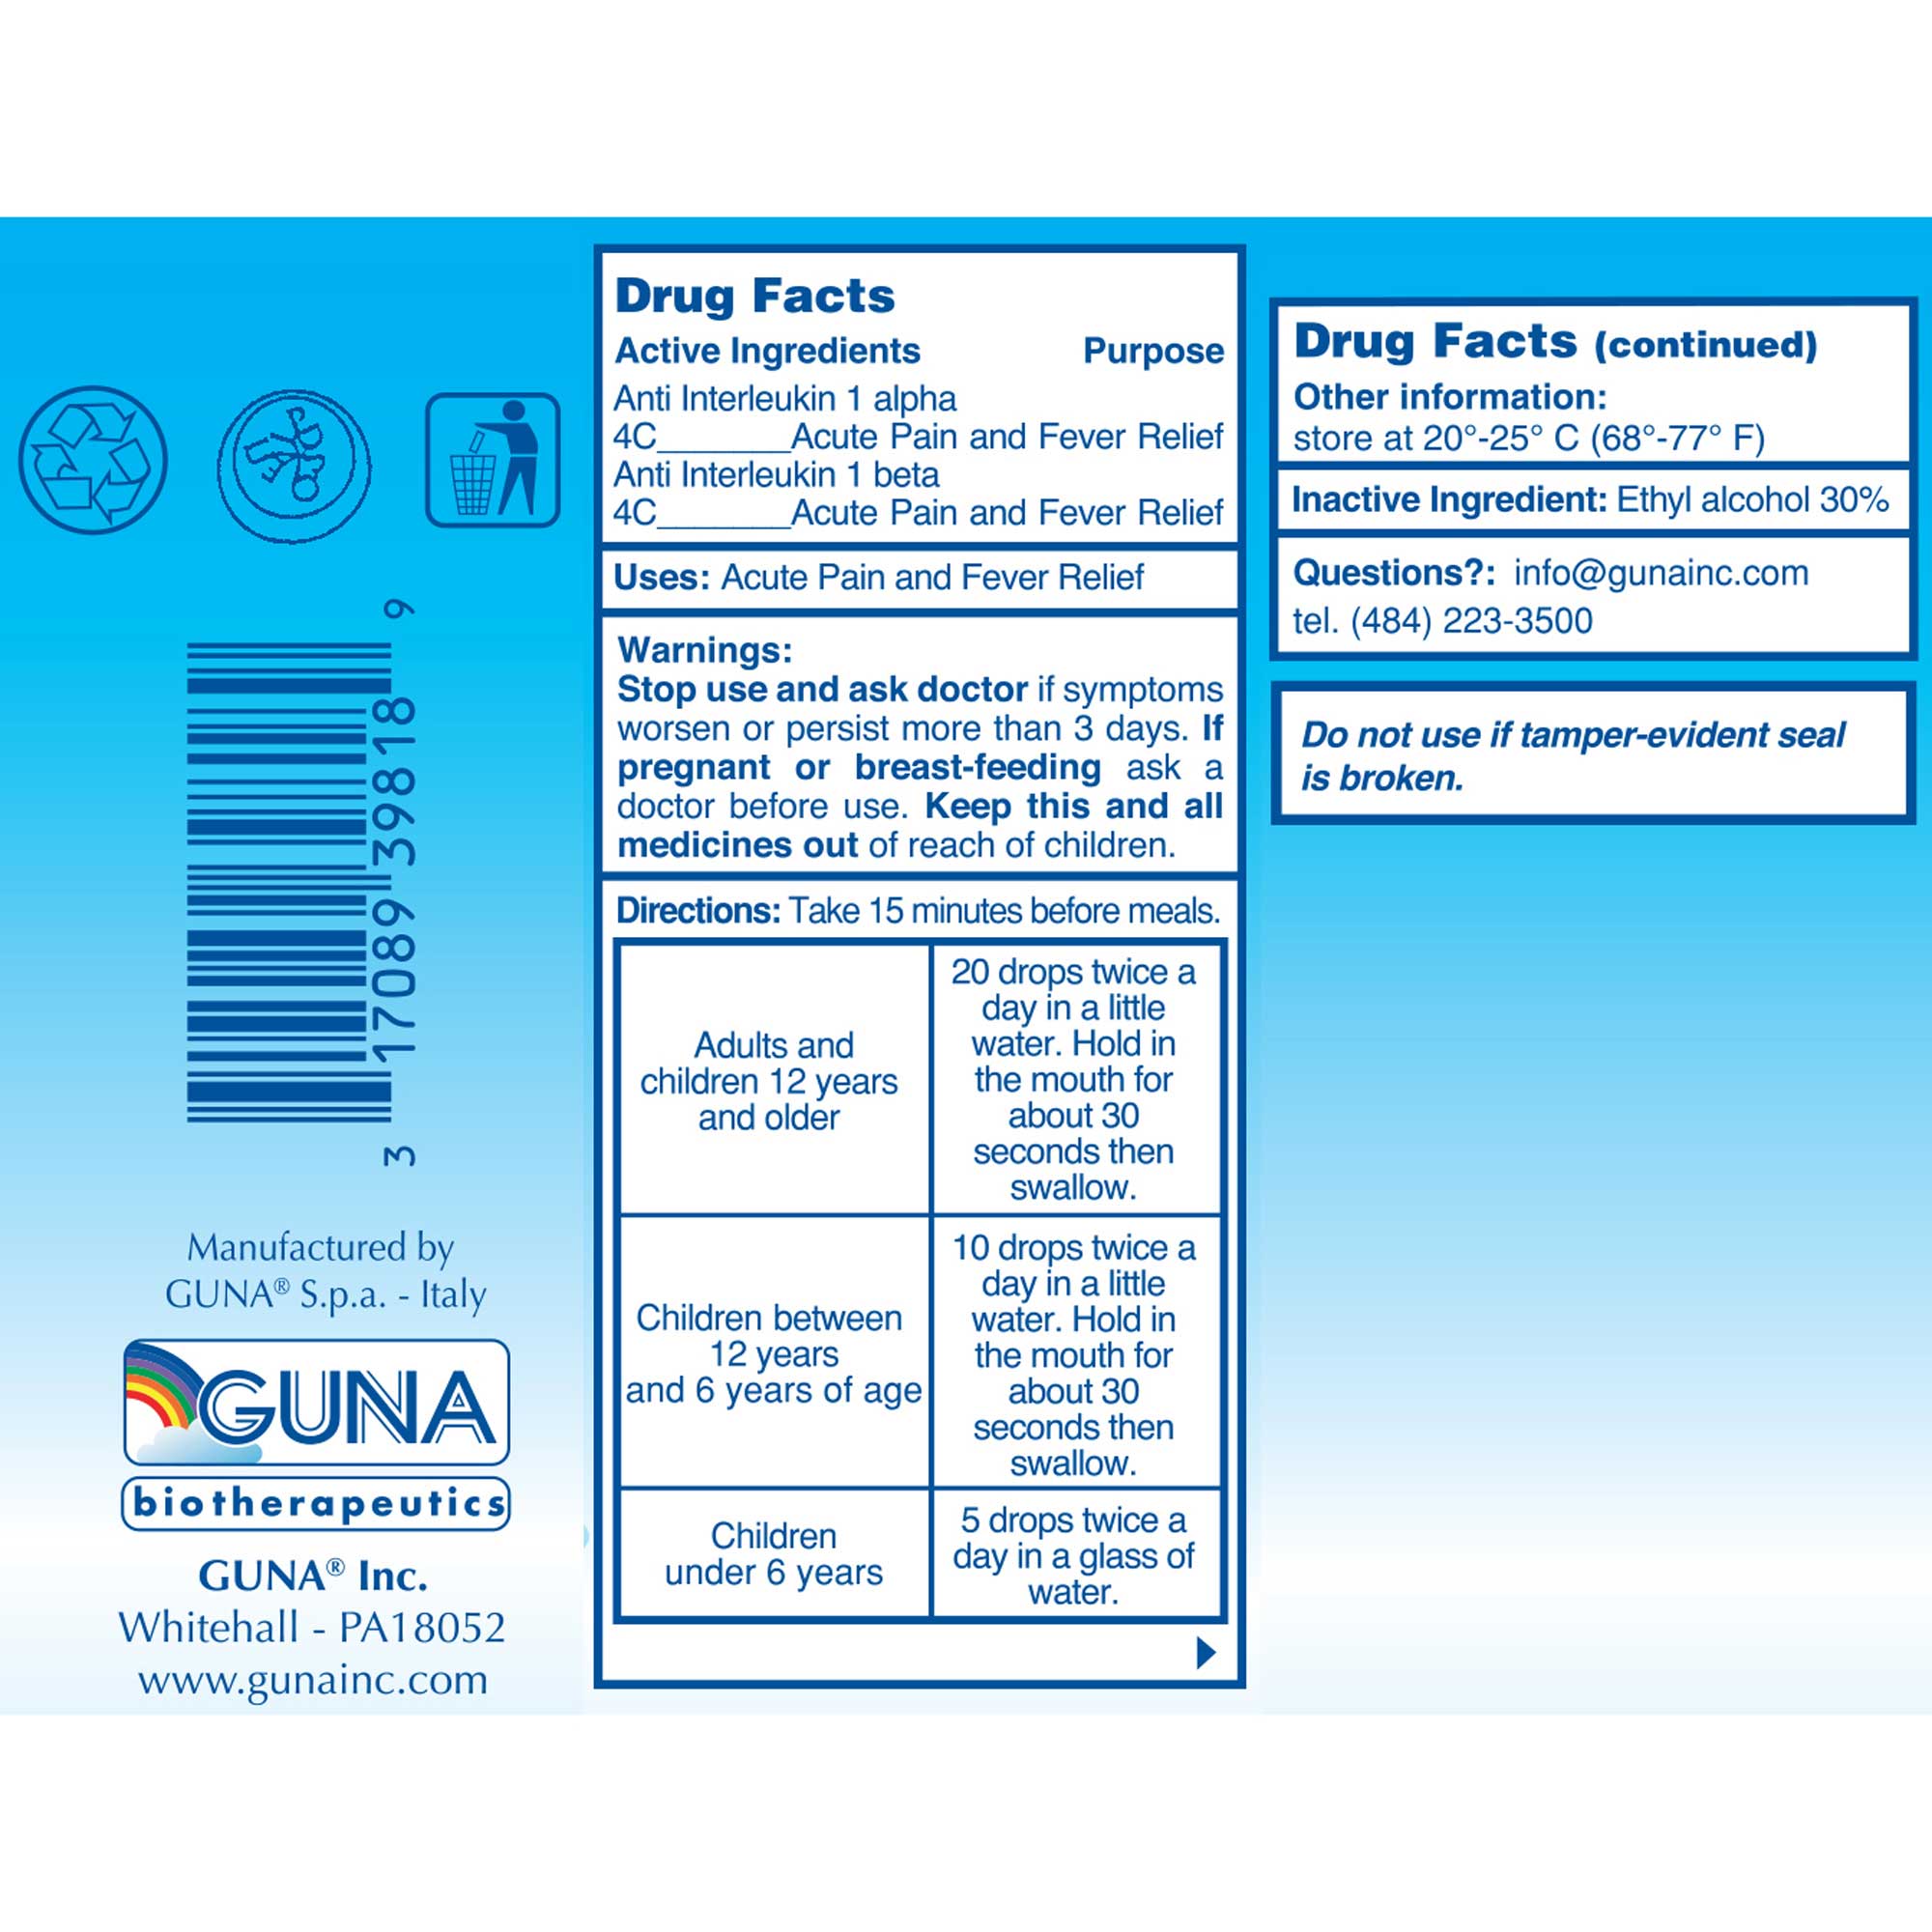 GUNA Biotherapeutics Anti IL 1 Ingredients